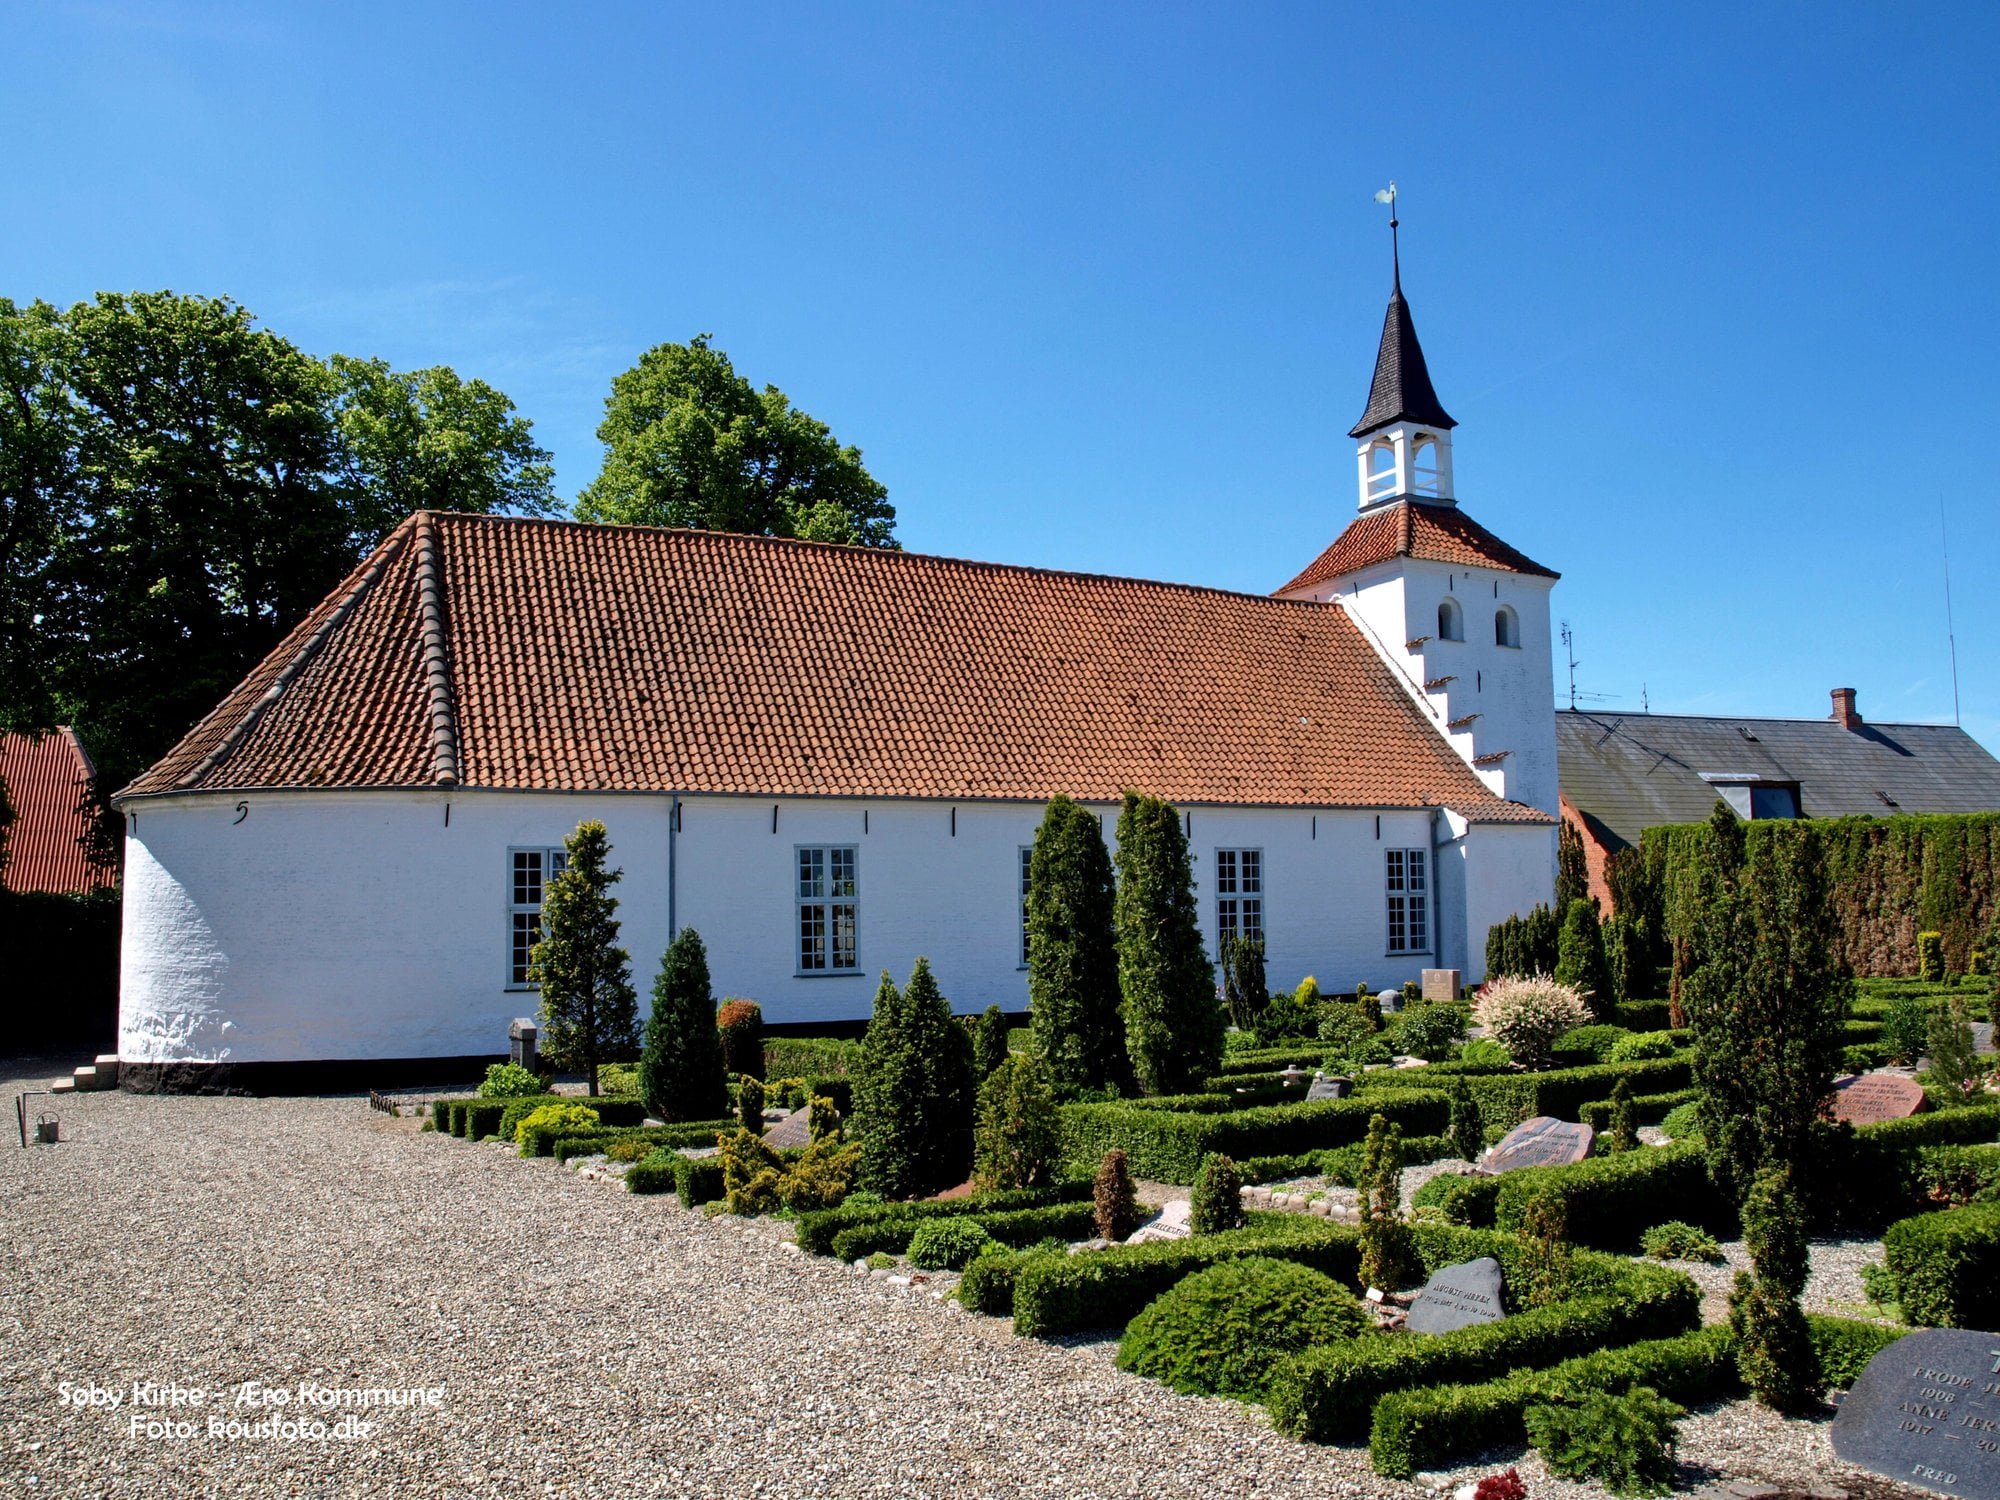 Søby kirke - Ærø